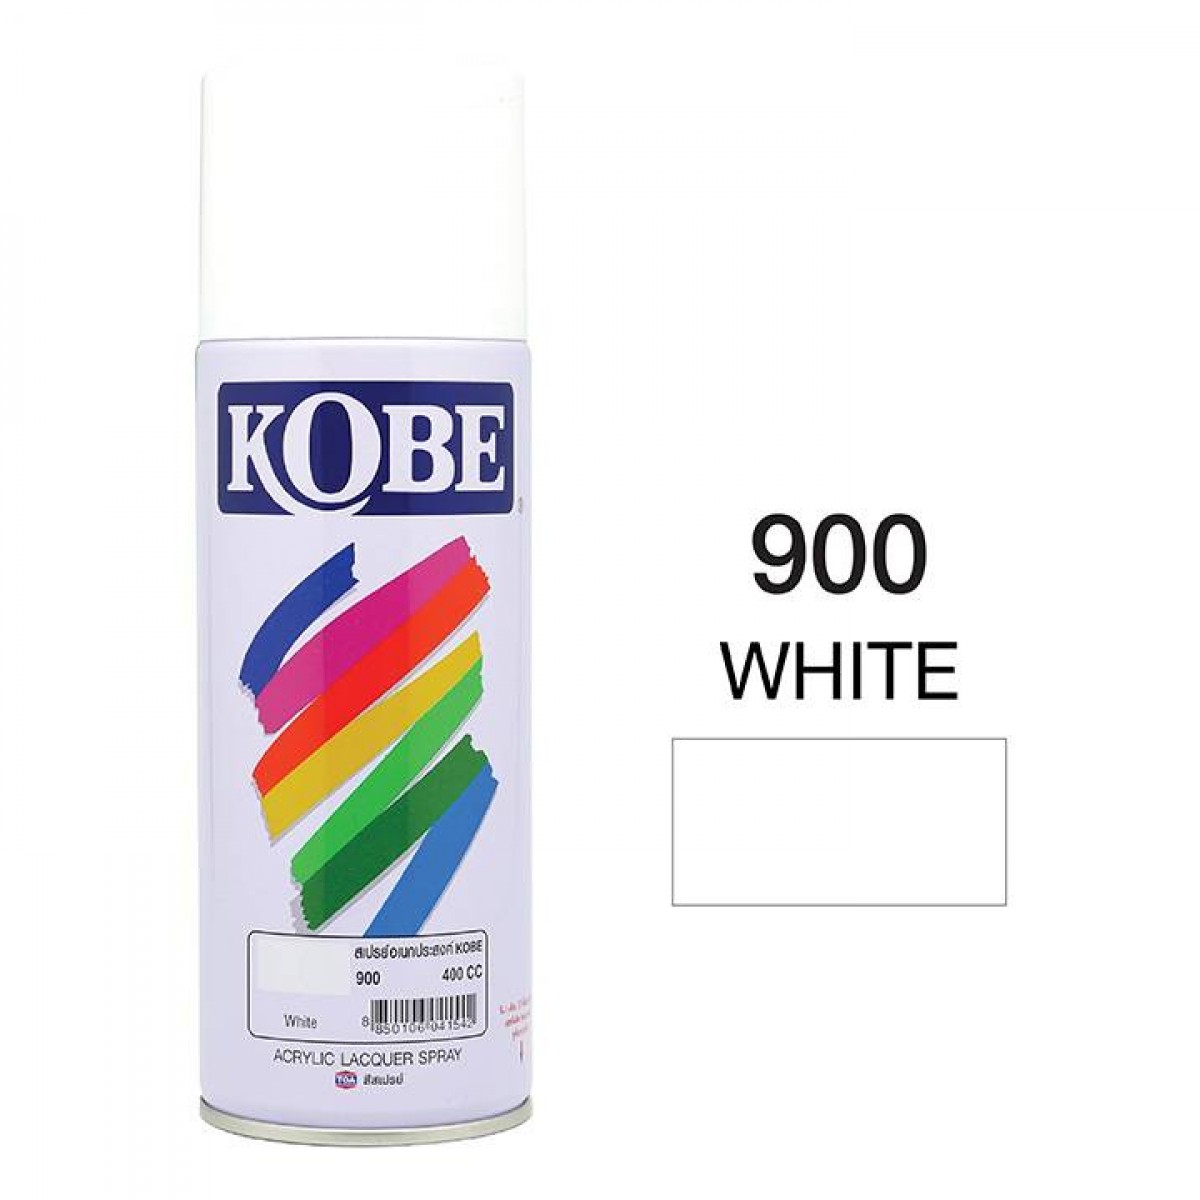 900 White KOBE Acrylic Lacquer Spray 400cc